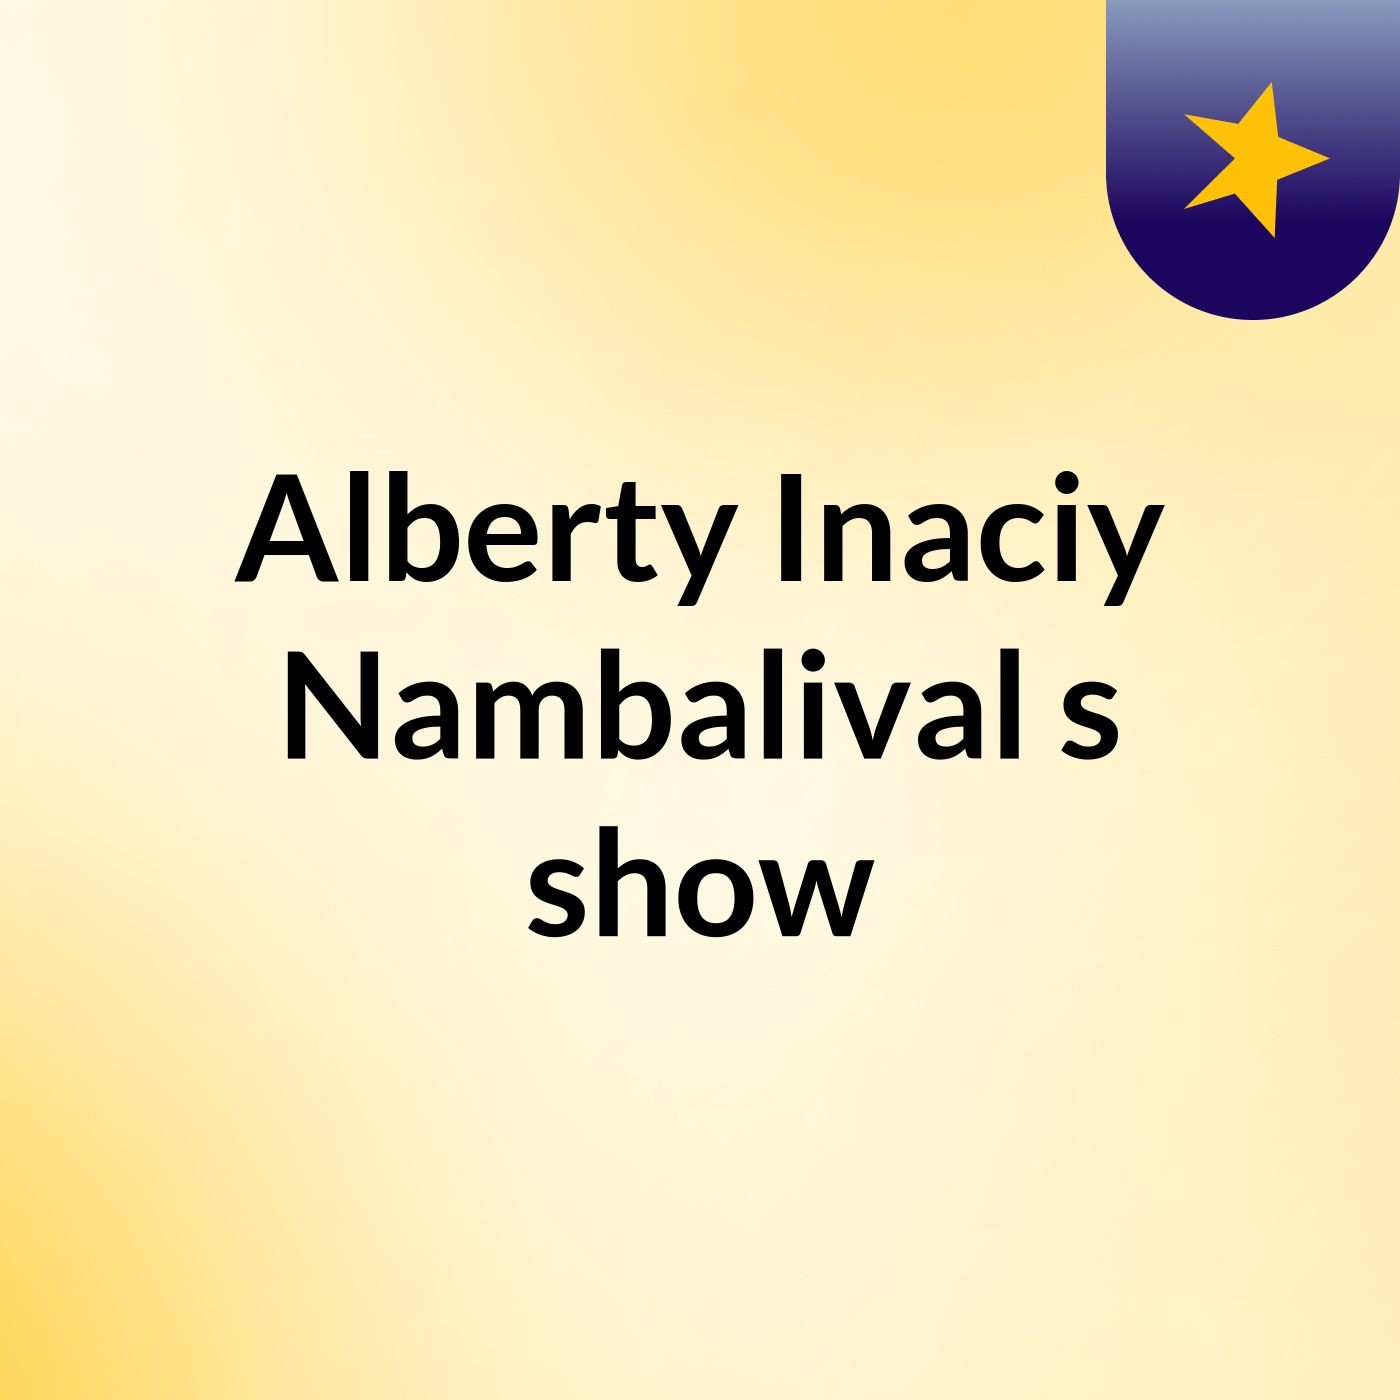 Alberty Inaciy Nambalival's show